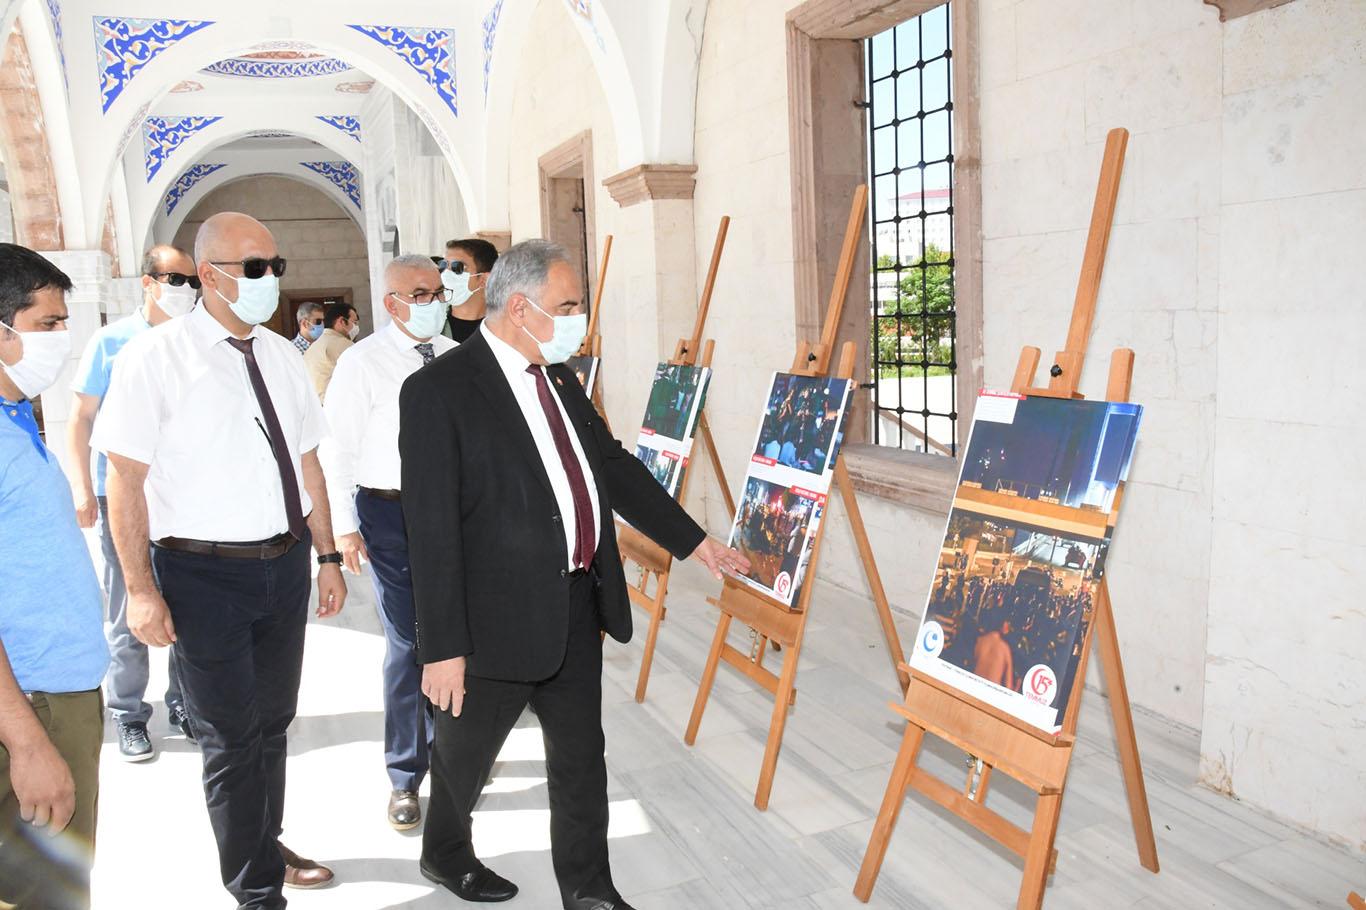 Adıyaman'da 15 Temmuz resim sergisi açıldı